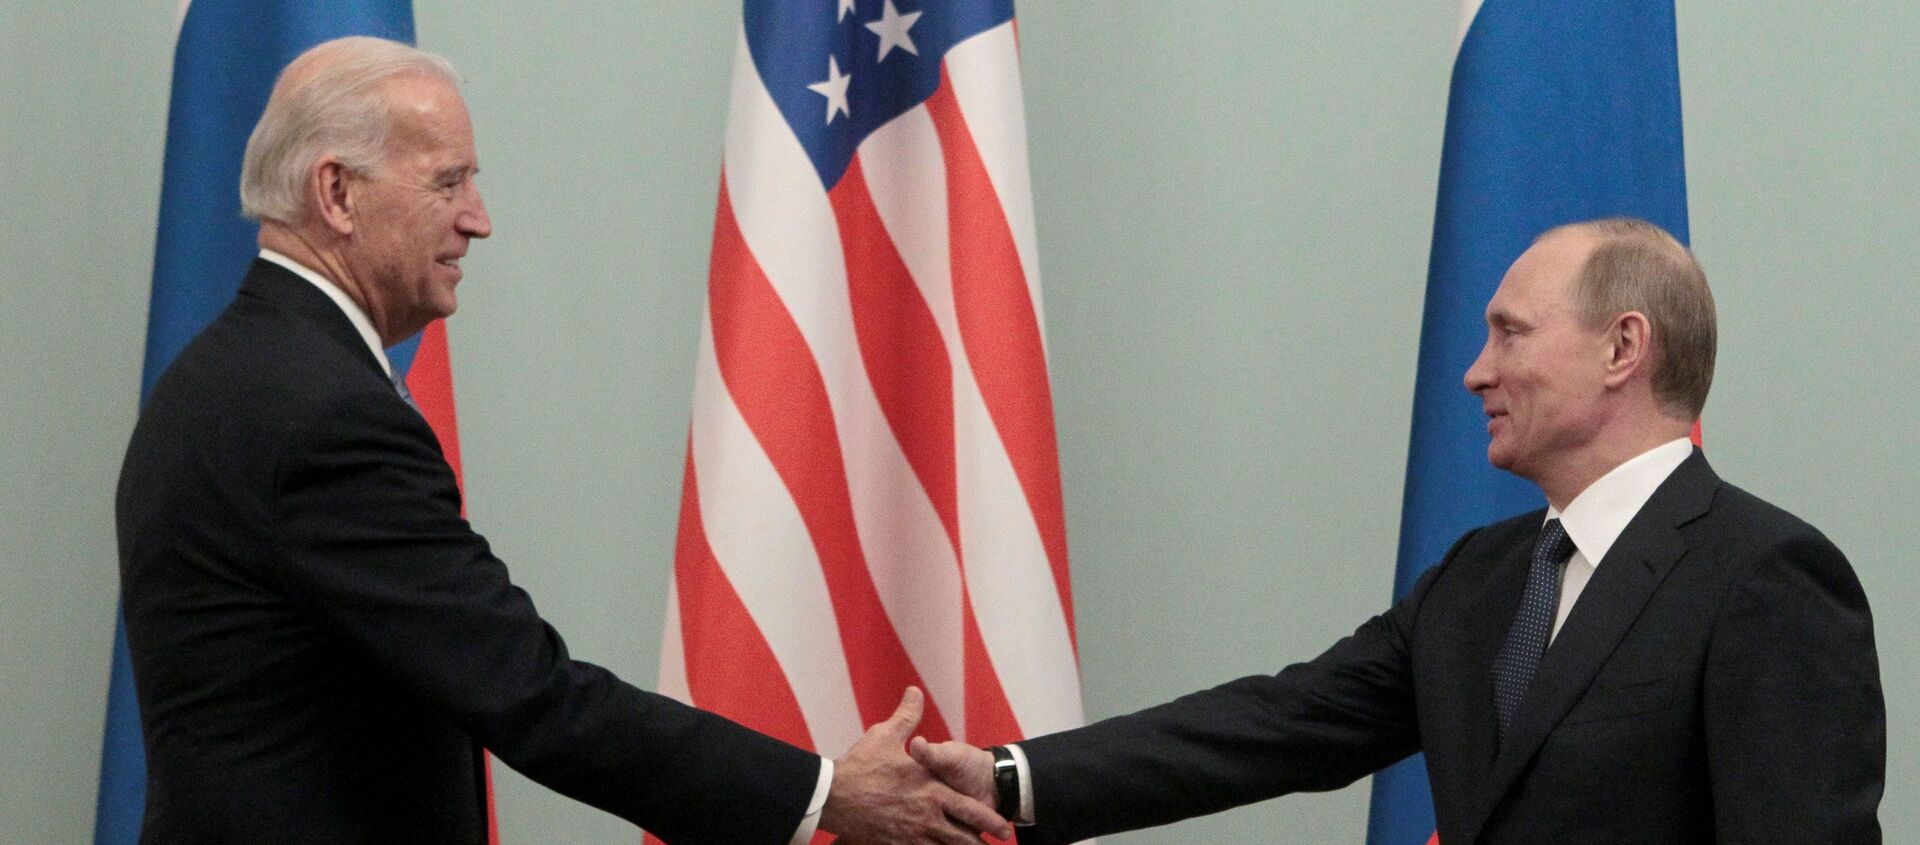 FILE PHOTO: Thủ tướng Nga Vladimir Putin (R) bắt tay Hoa Kỳ Phó Tổng thống Joe Biden trong cuộc gặp của họ tại Moscow ngày 10 tháng 3 năm 2011. - Sputnik Việt Nam, 1920, 10.06.2021